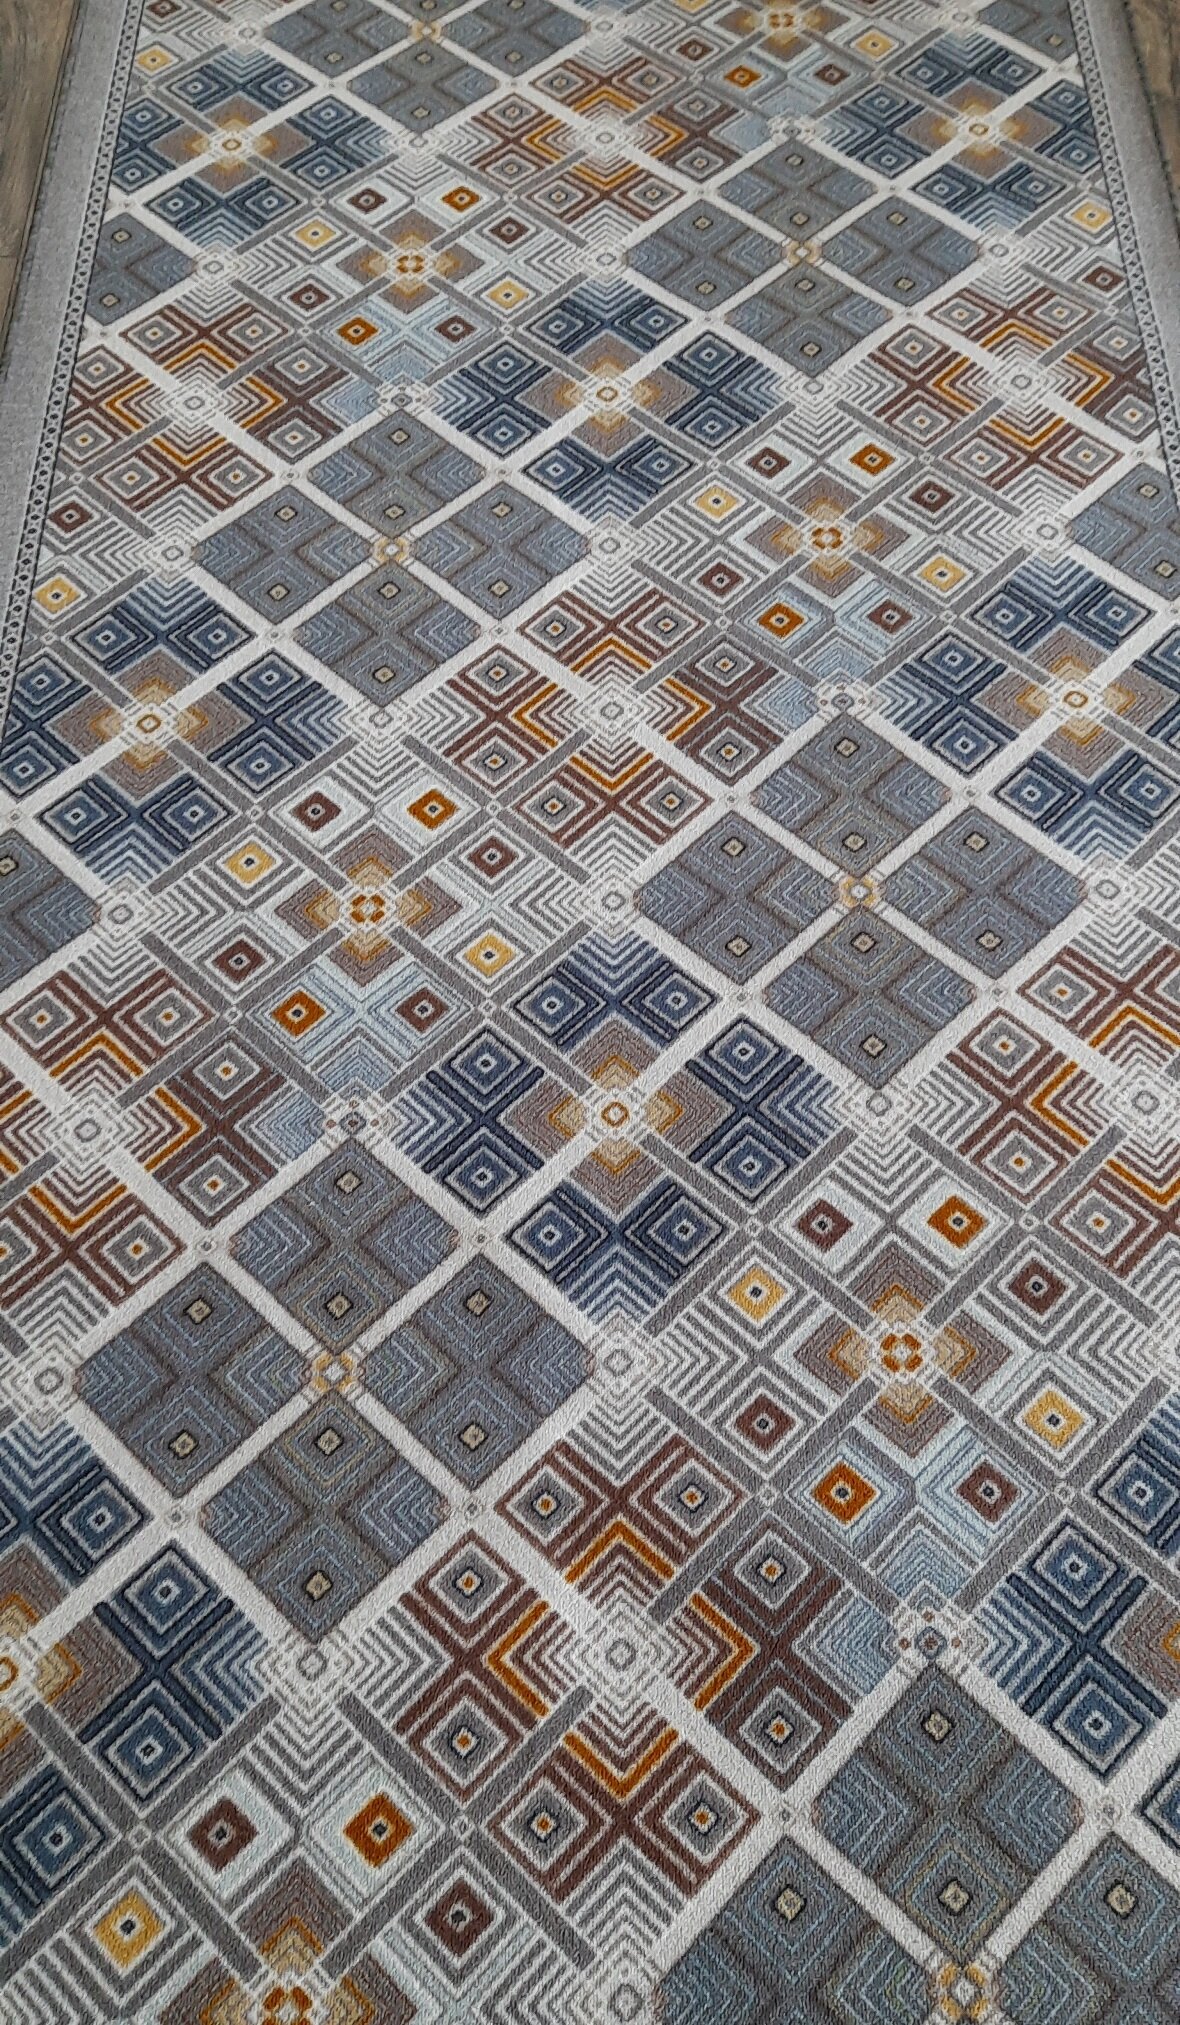 Ковровая дорожка на войлоке, Витебские ковры, с печатным рисунком, 2586, разноцветная, 1.5*1.5 м - фотография № 2